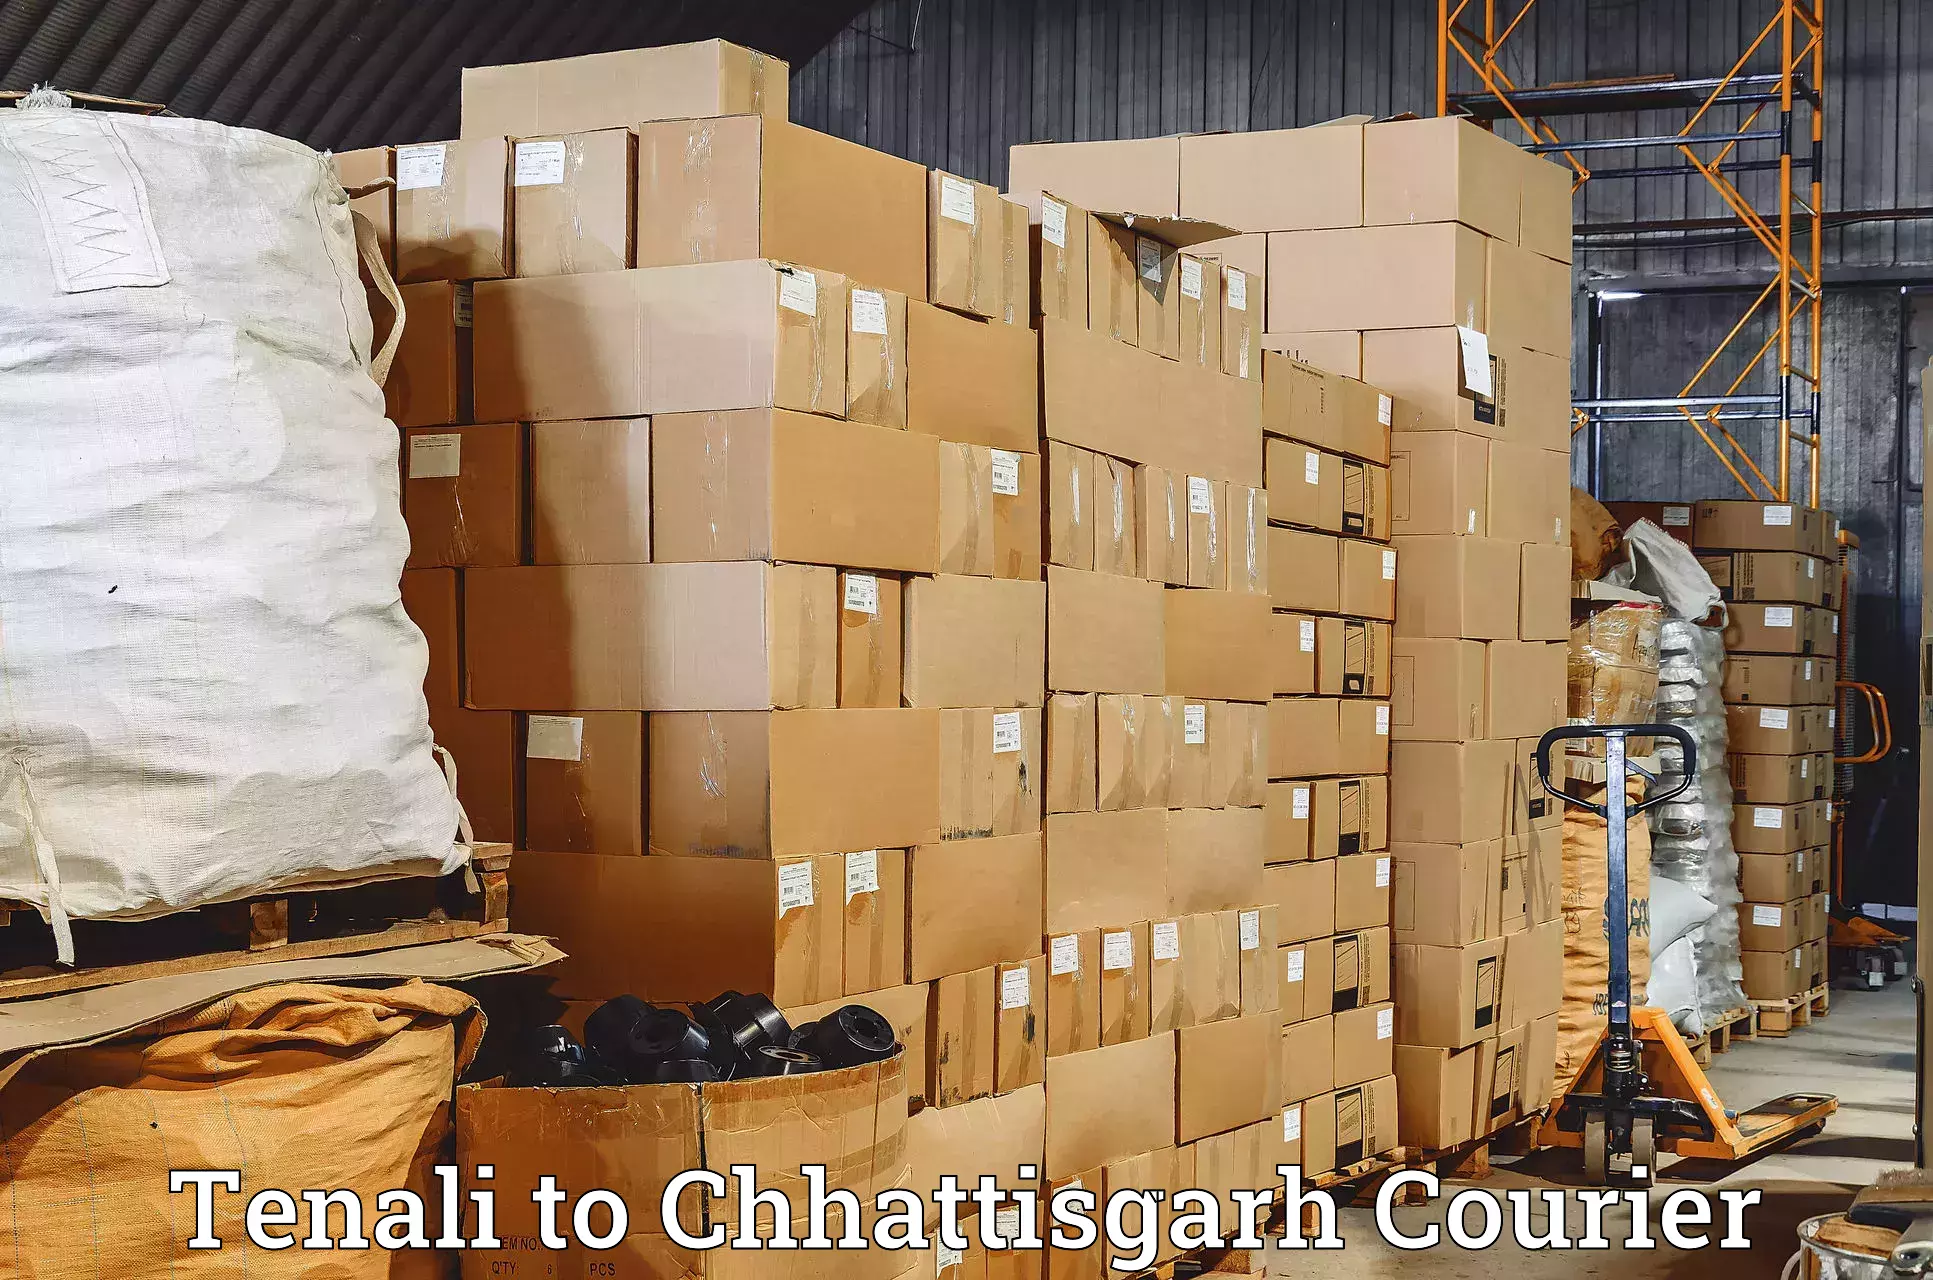 Corporate courier solutions Tenali to Bijapur Chhattisgarh